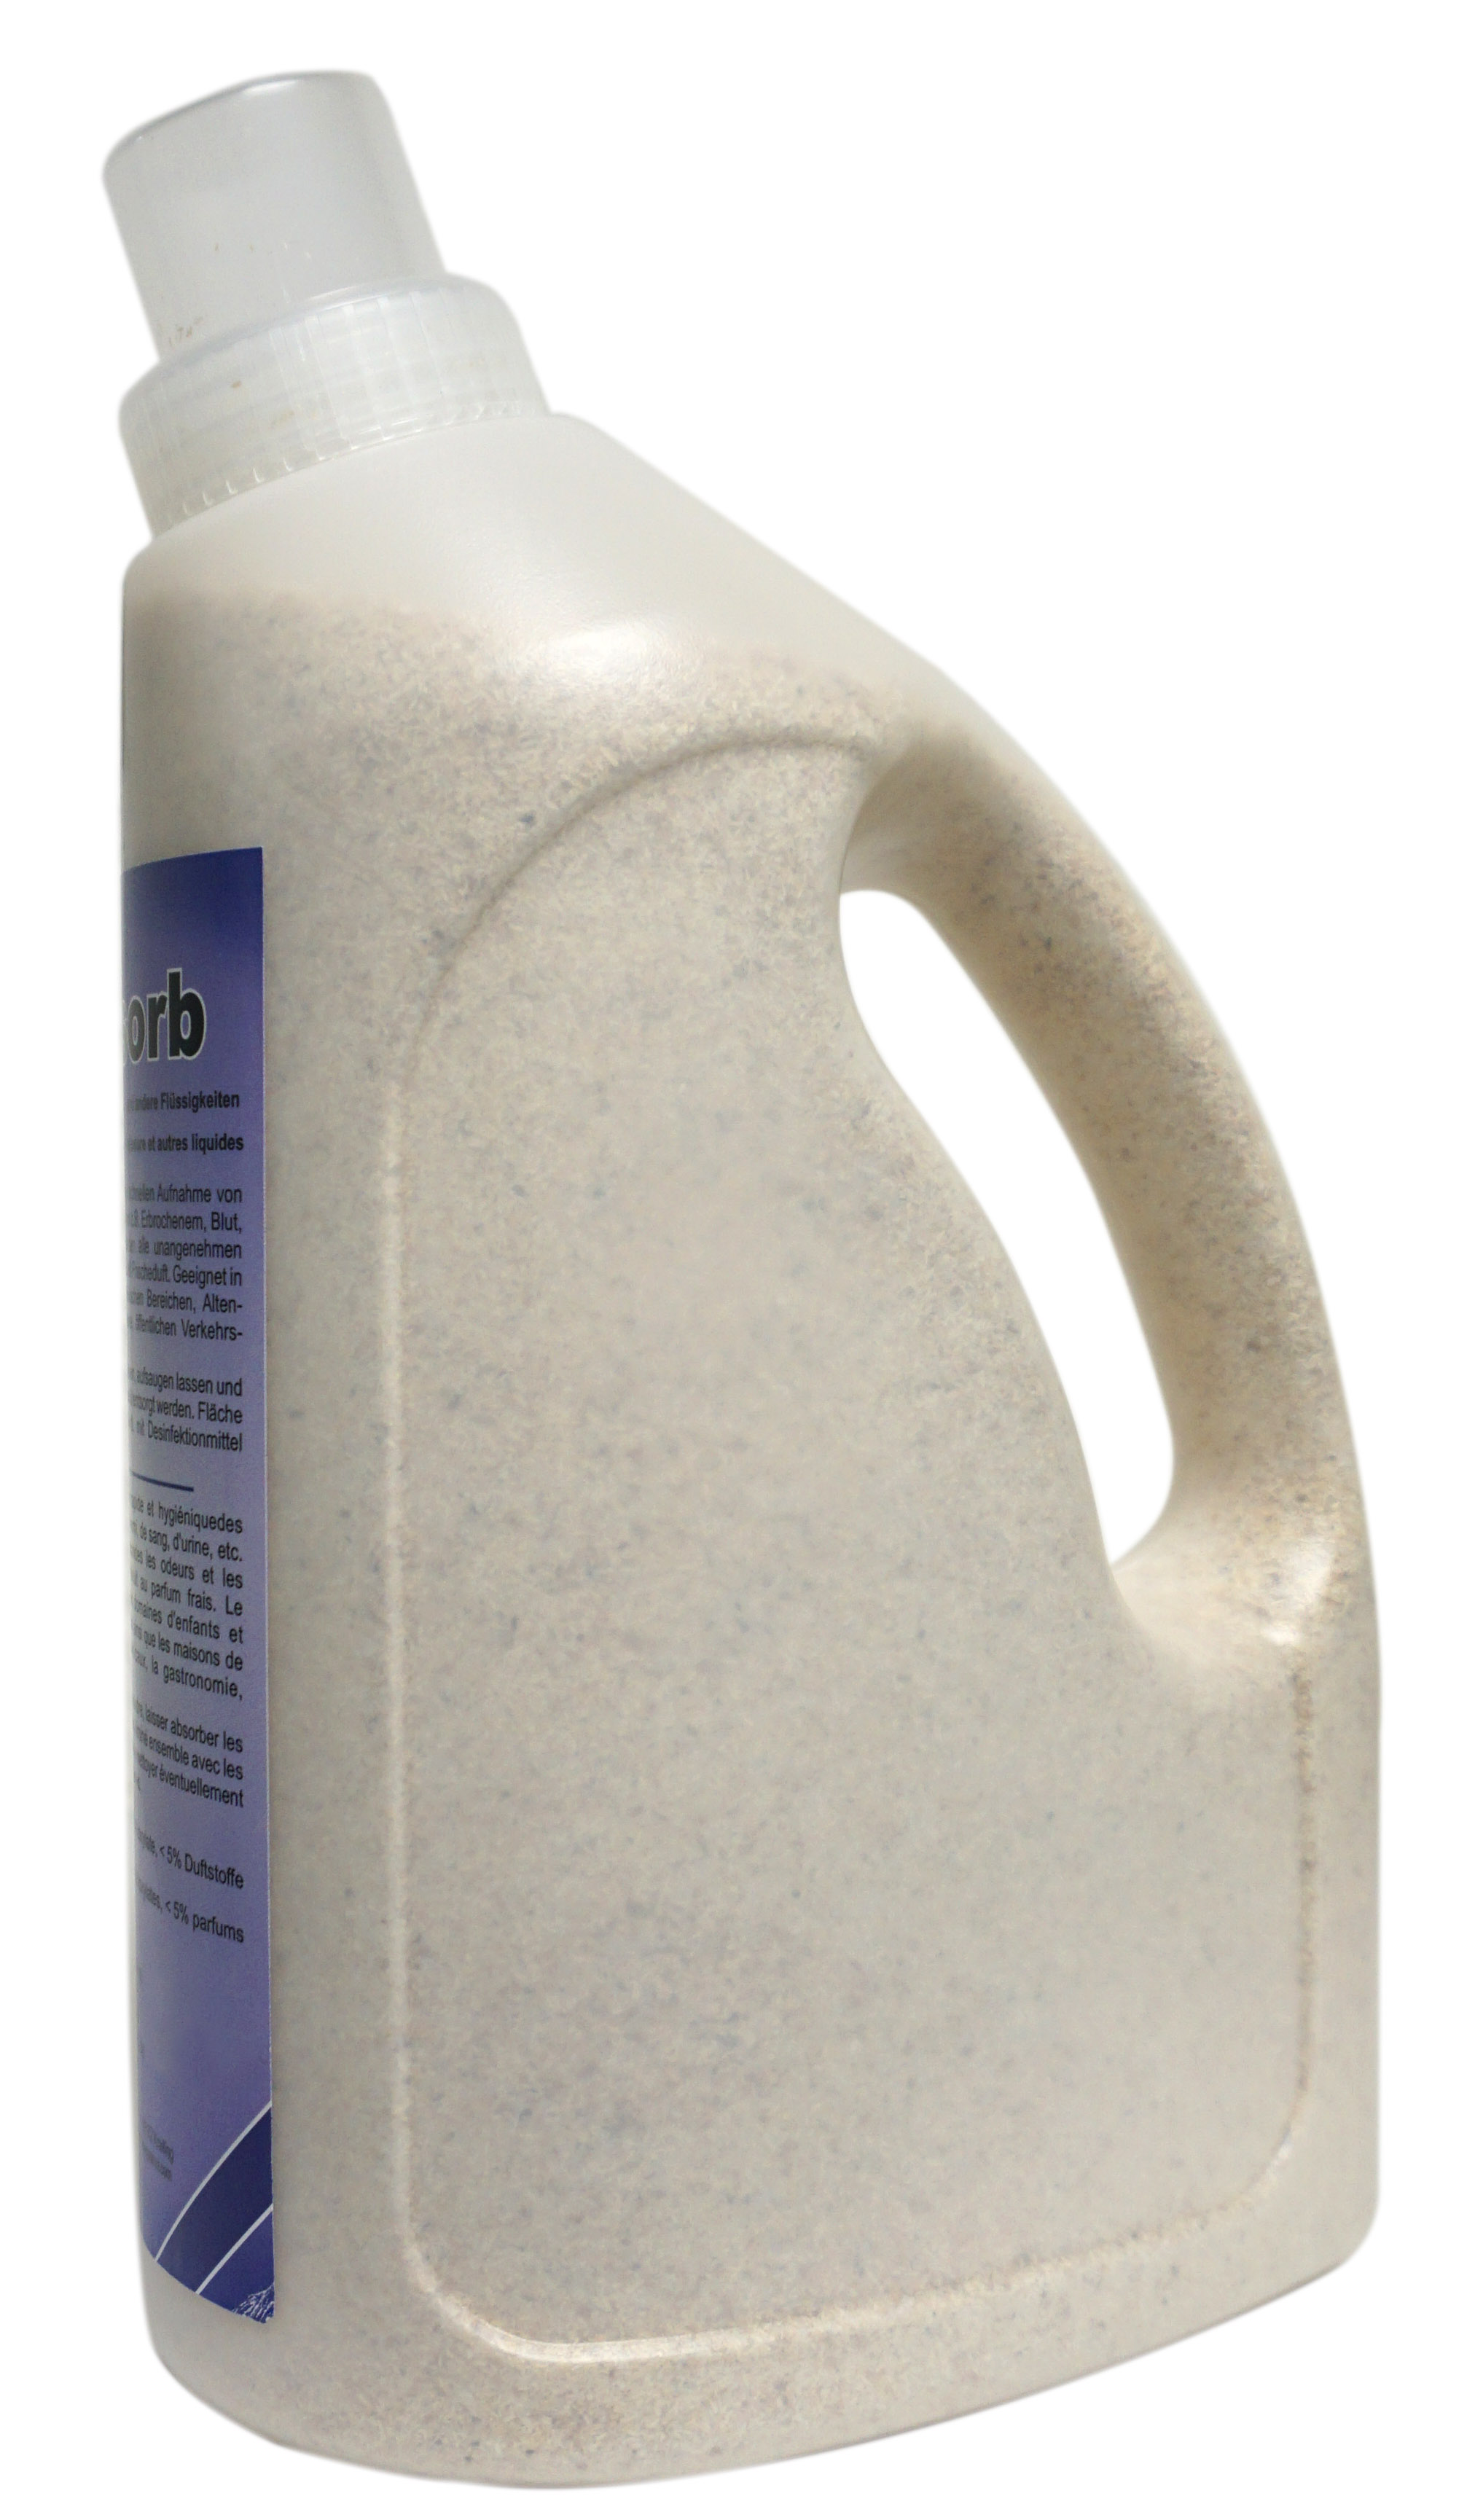 Pramol Absorb, Granulat für Erbrochenes und andere Flüssigkeiten, 1 Flasche, 1,5 Liter